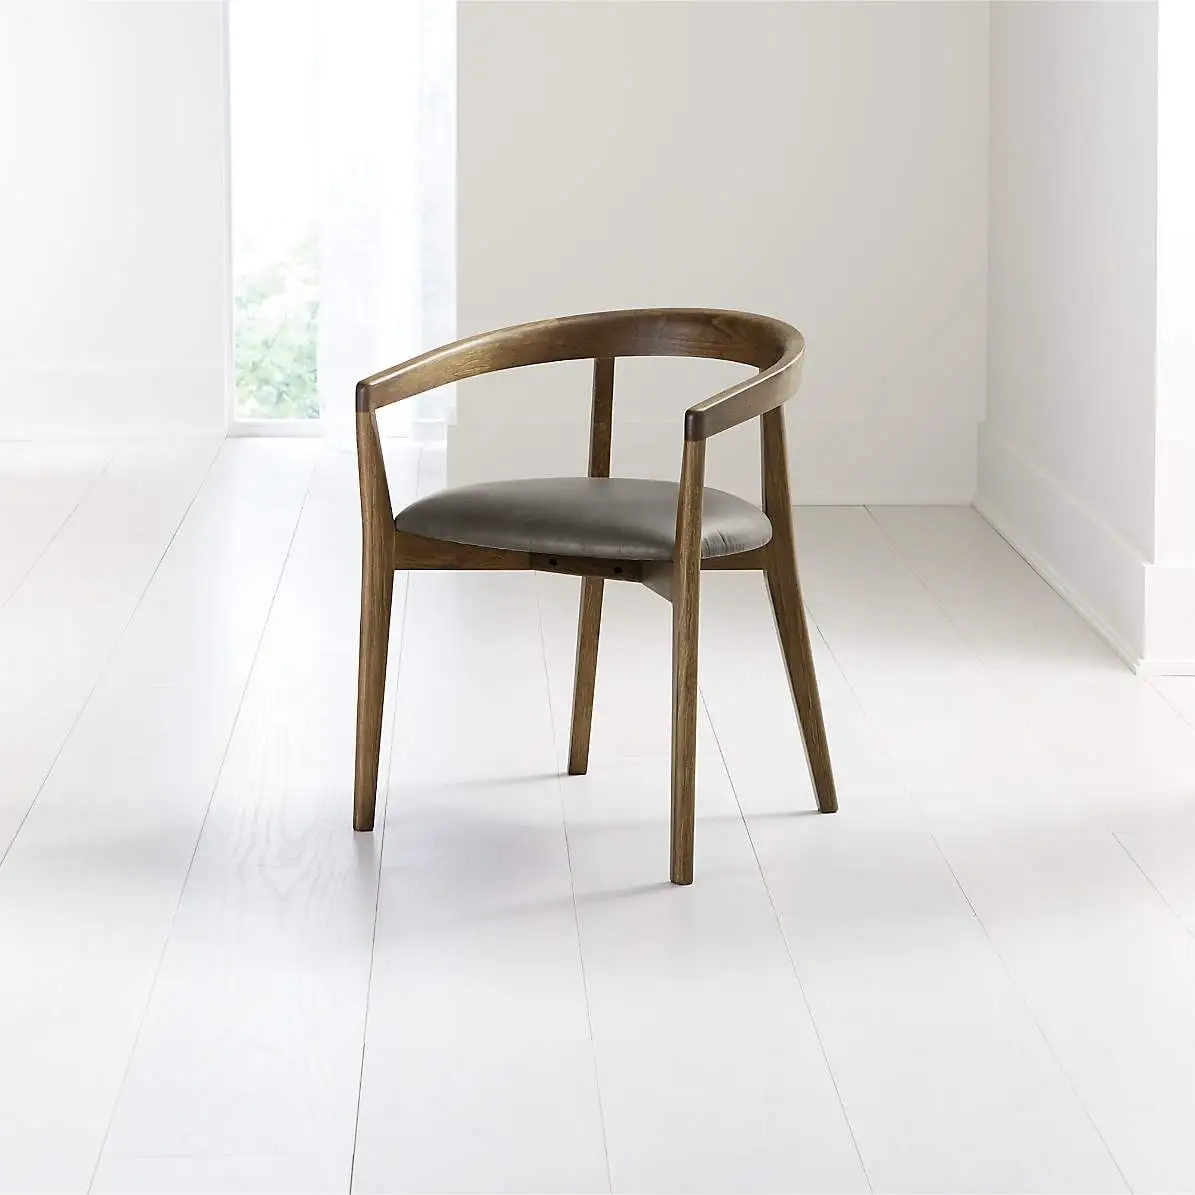 Nordico classico Kennedy sedia da pranzo, perfetta fusione di sedia presidenziale personalizzata moderna e naturale